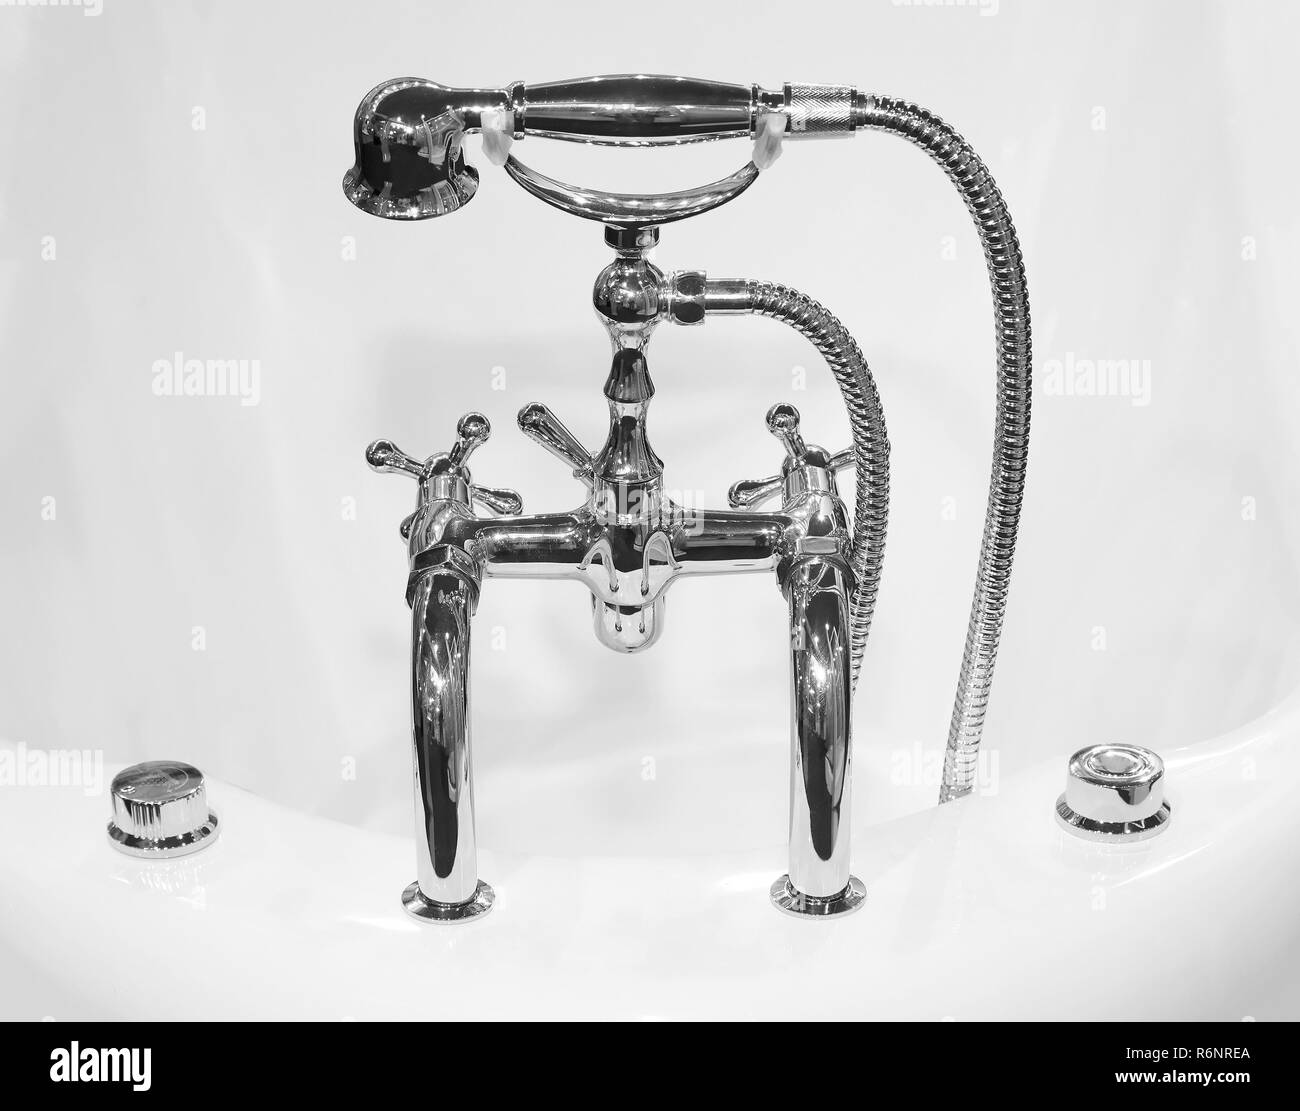 Vintage bathtub faucet fixture Stock Photo